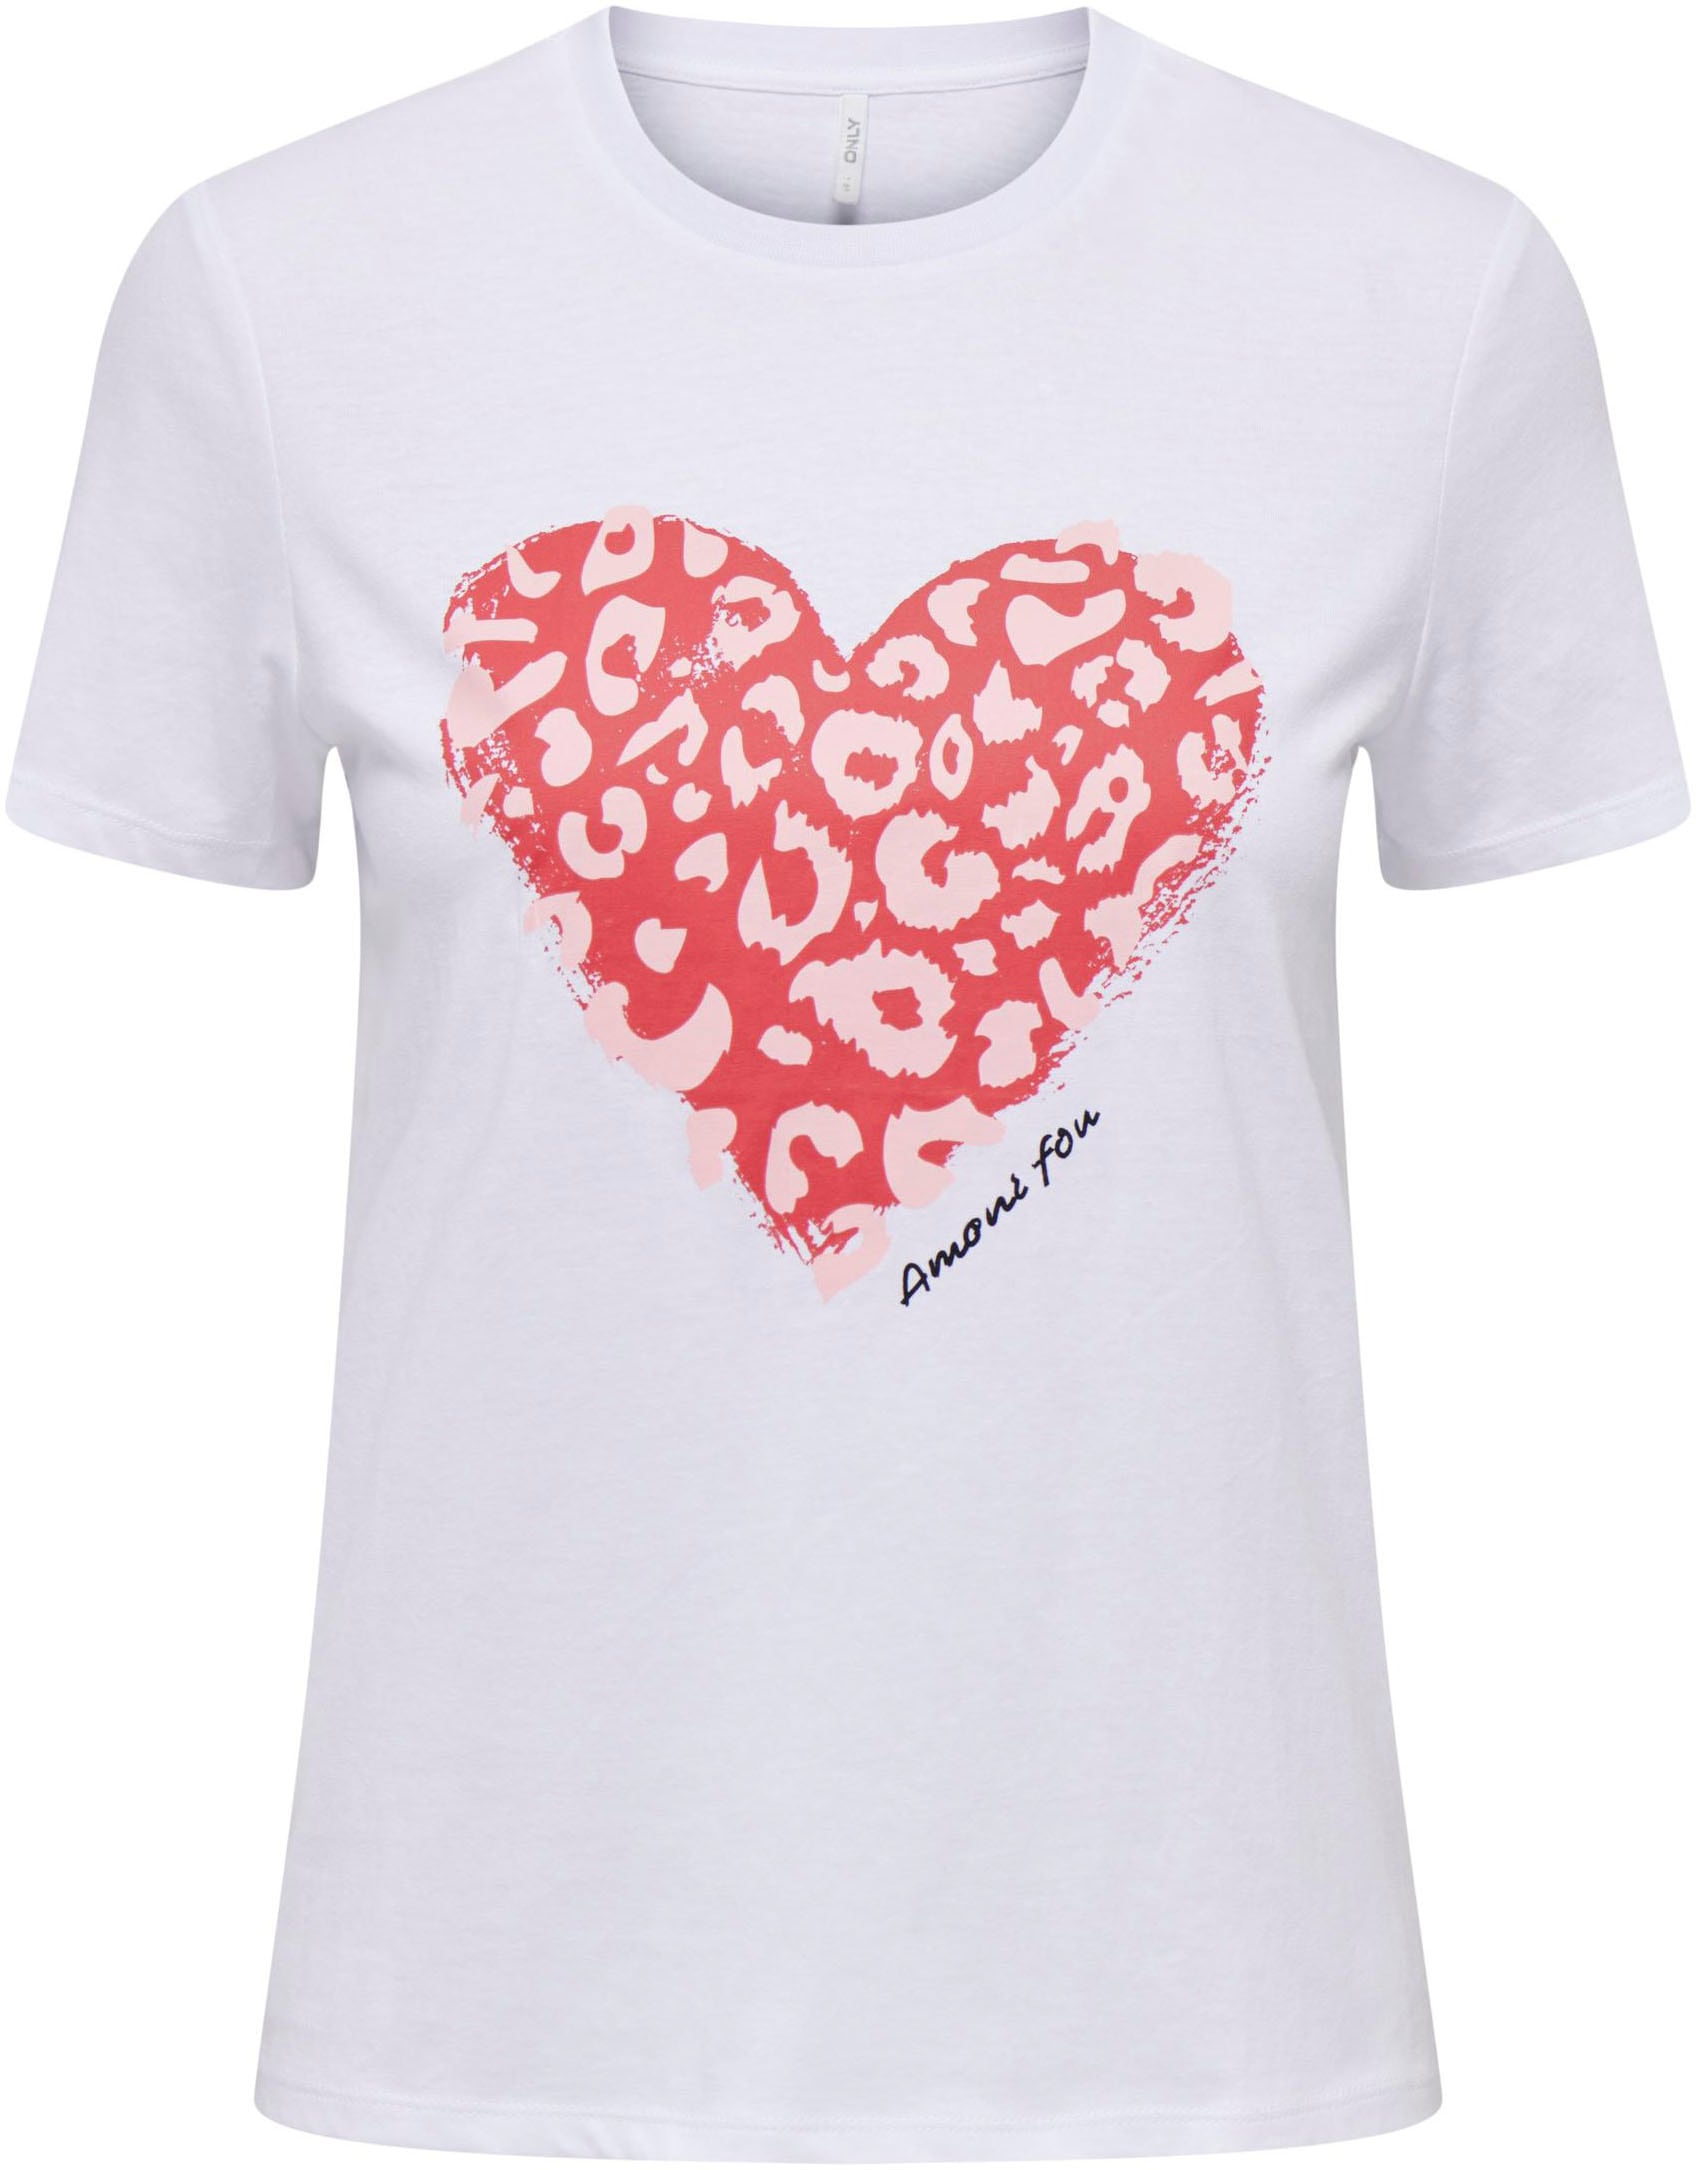 HEART BOX TOP »ONLBENJI JRS« S/S ONLY REG kaufen Kurzarmshirt